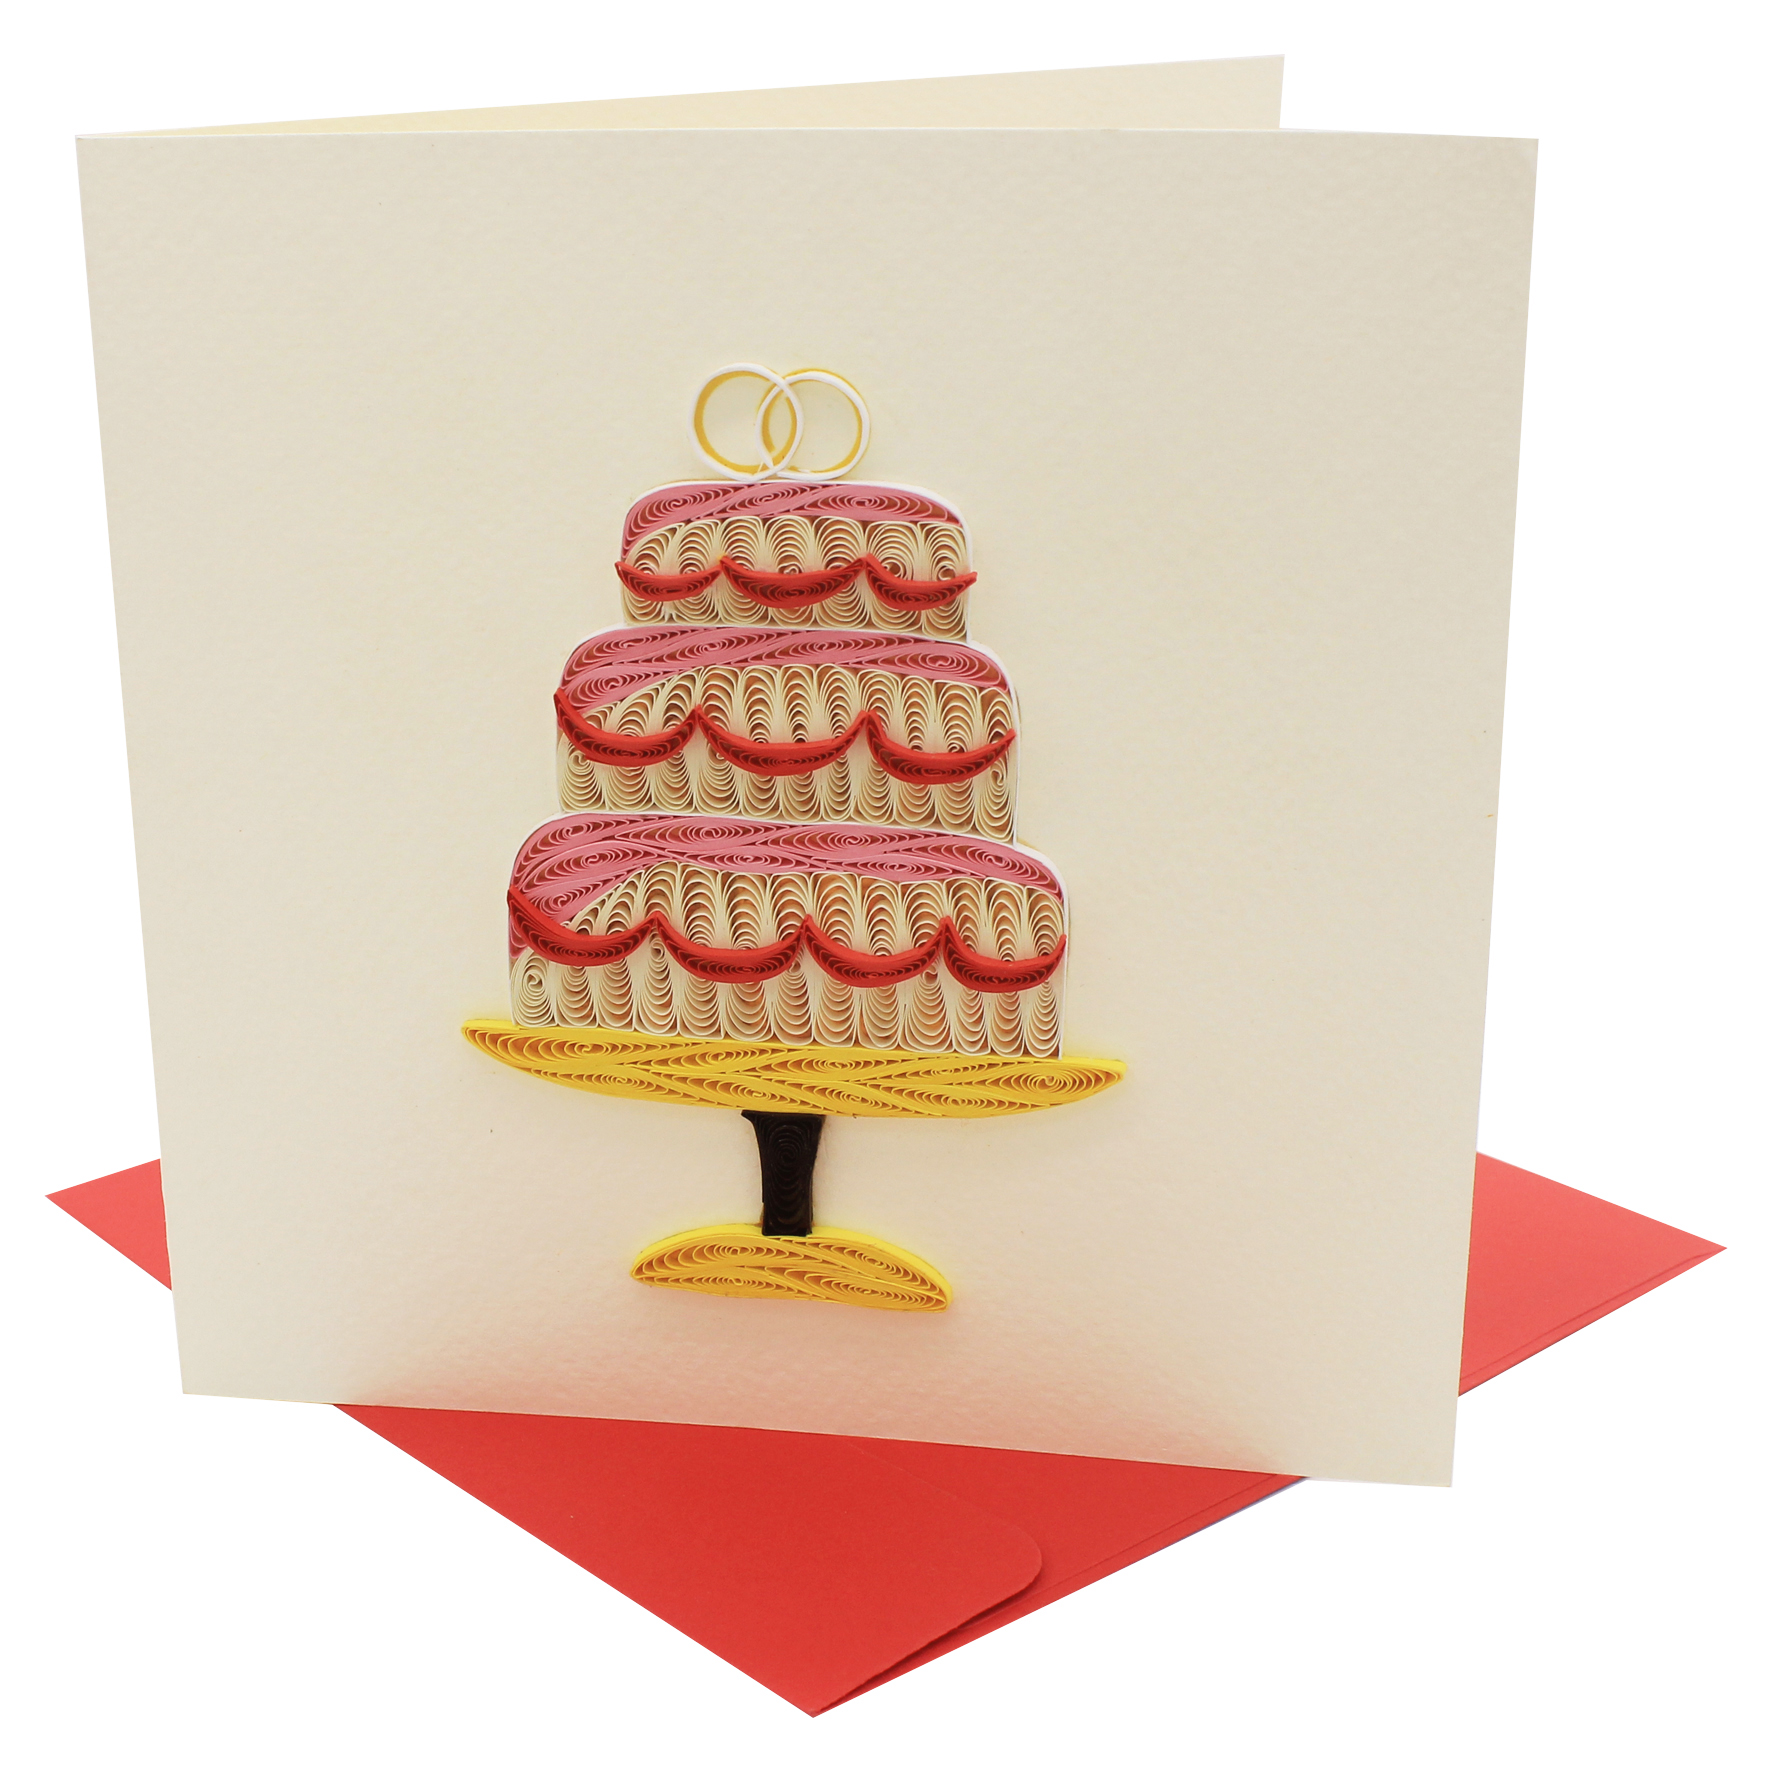 Thiệp Handmade - Thiệp Bánh kem đám cưới nghệ thuật giấy xoắn (Quilling Card) - Tặng Kèm Khung Giấy Để Bàn - Thiệp chúc mừng sinh nhật, kỷ niệm, tình yêu, cảm ơn...